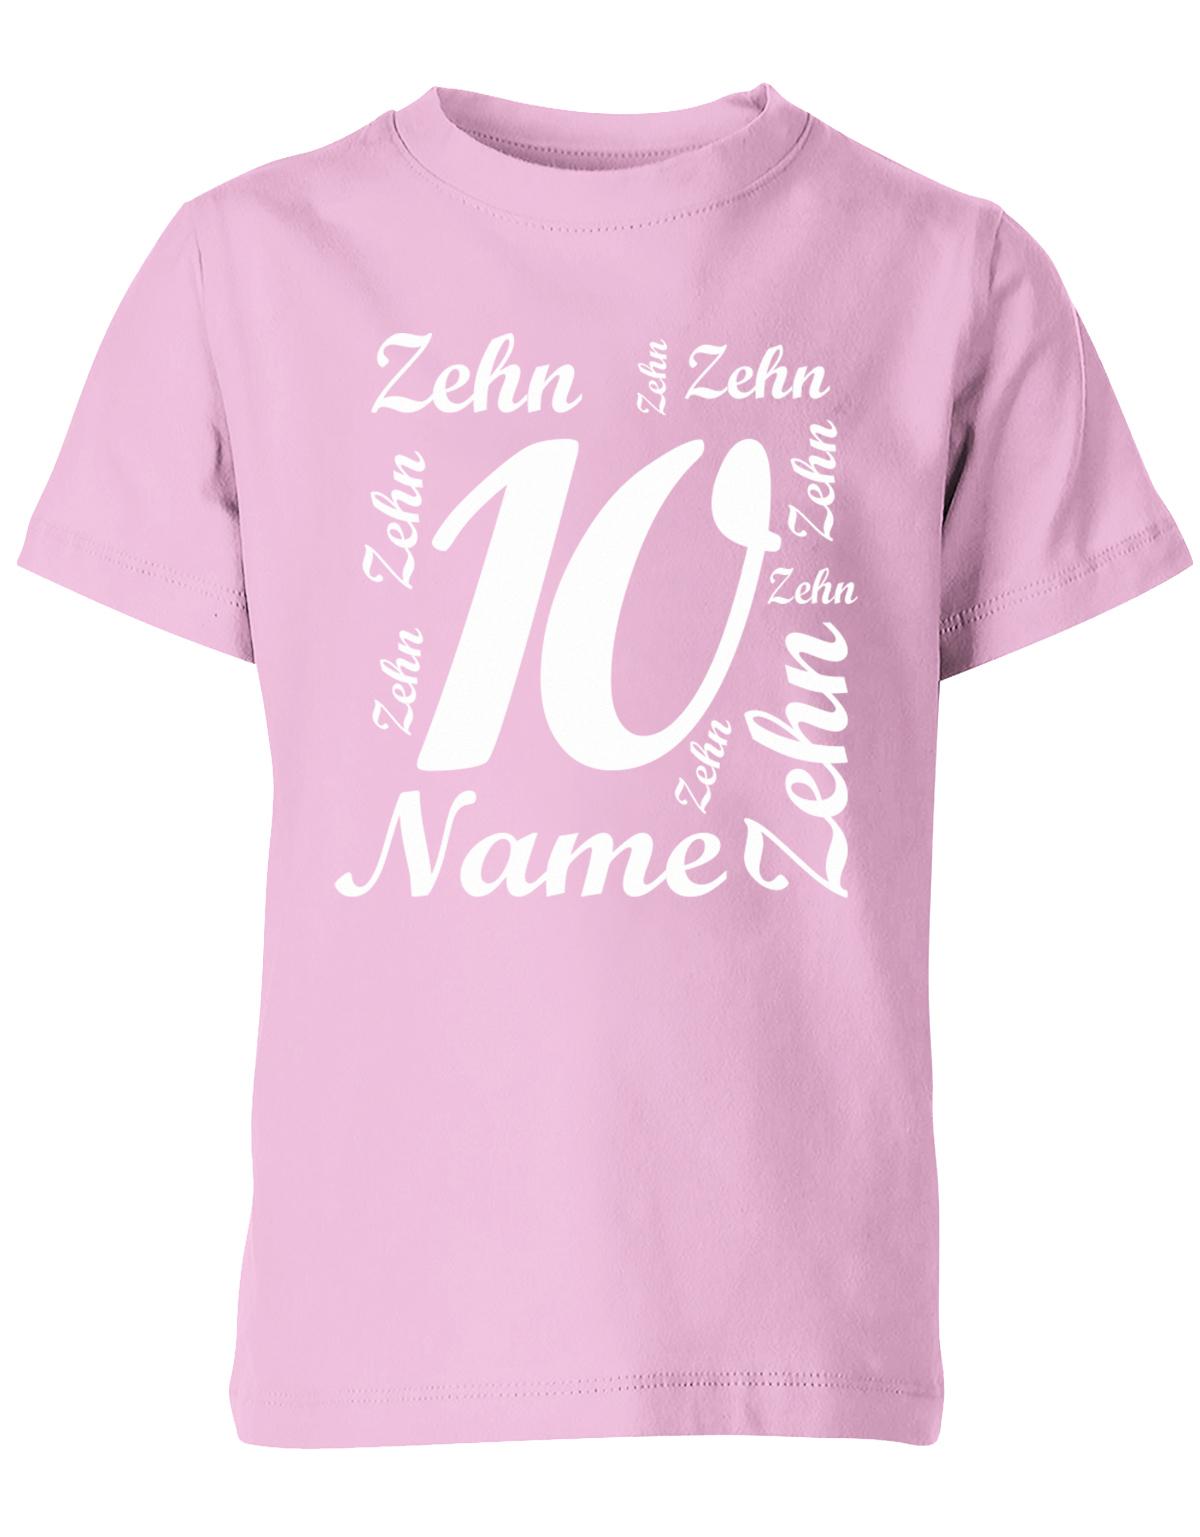 ich-bin-10-viele-zehnen-mit-name-geburtstag-kinder-shirt-rosa